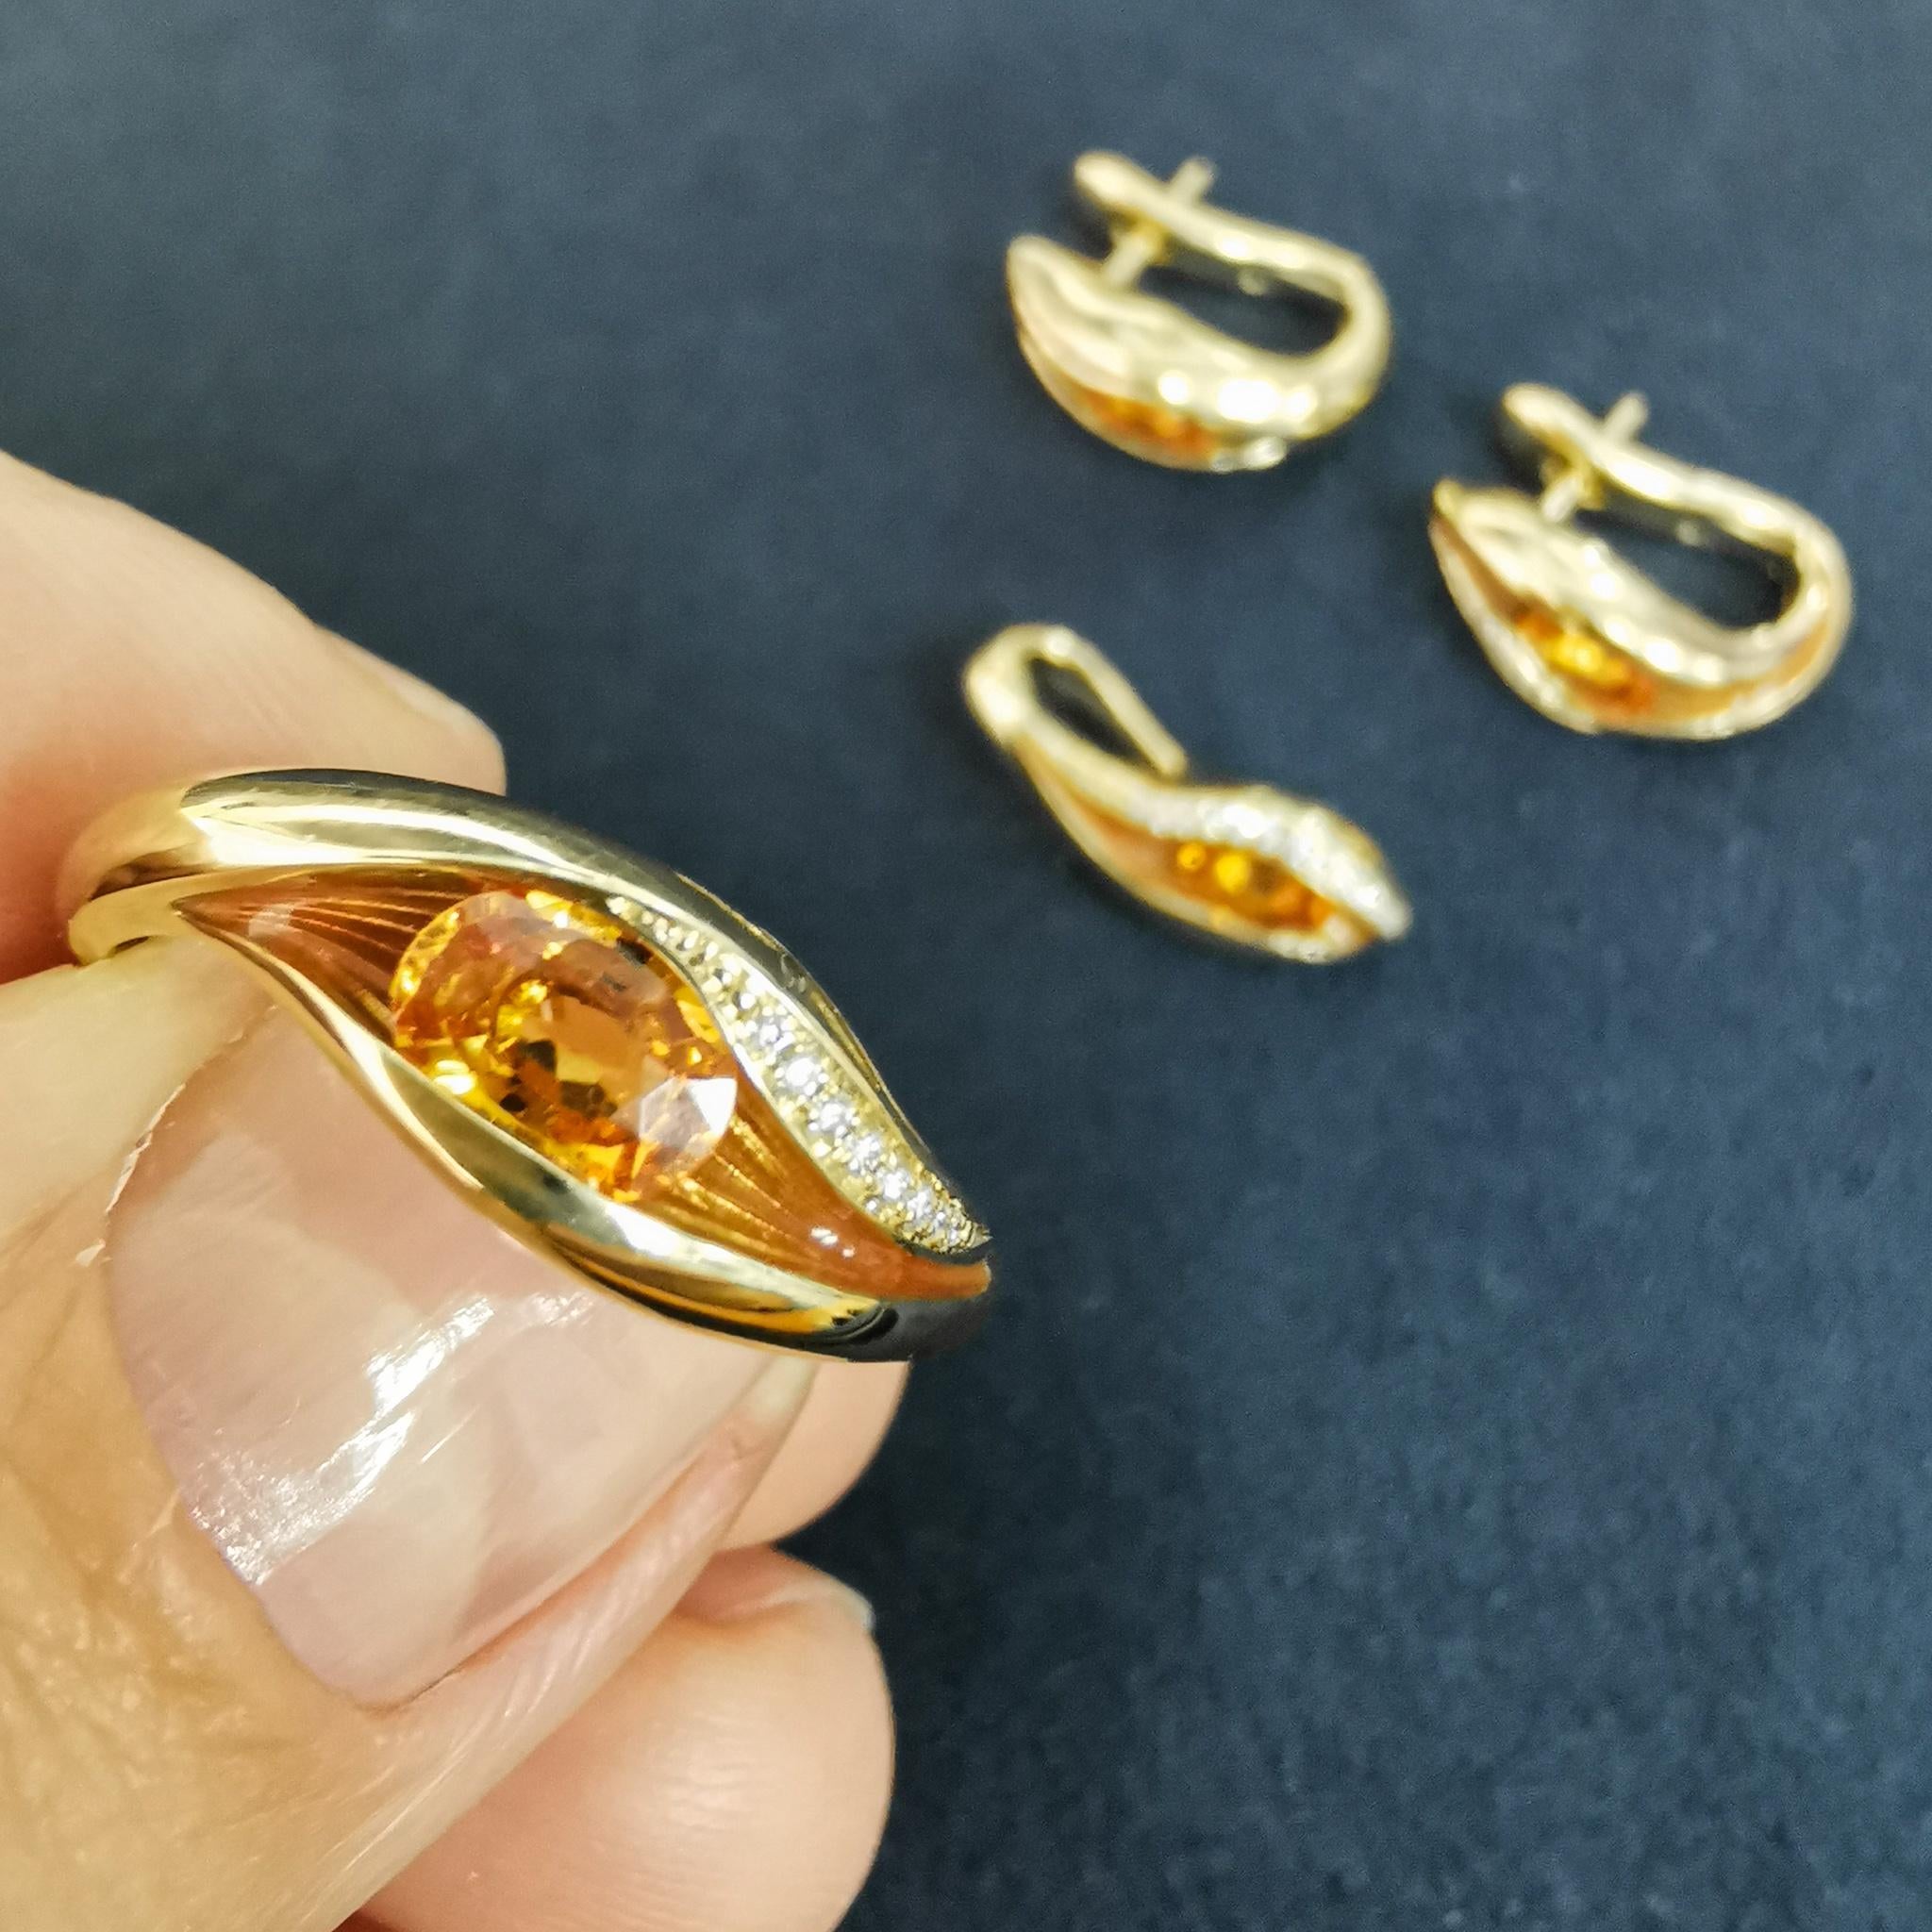 Spessartine Diamanten Emaille 18 Karat Gelbgold Geschmolzene Farben Suite
Unsere neue Kollektion 